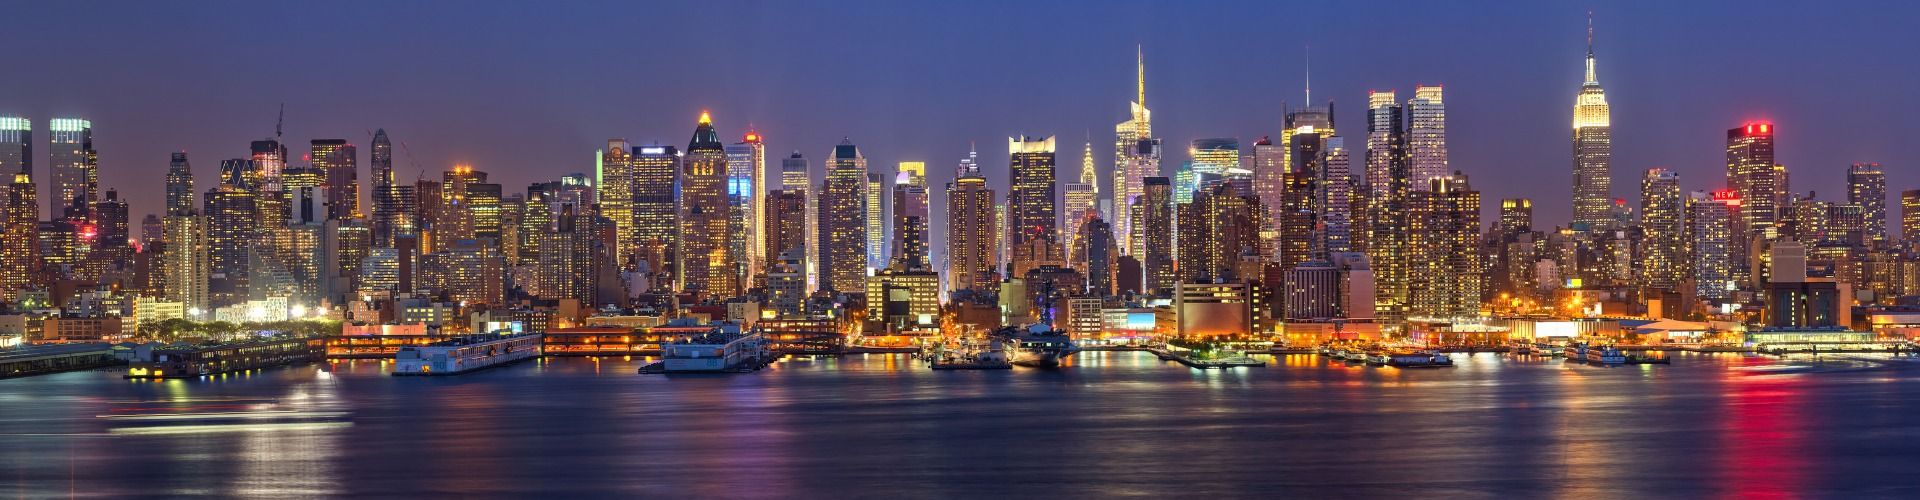 SUA New York Manhattan imagine noaptea